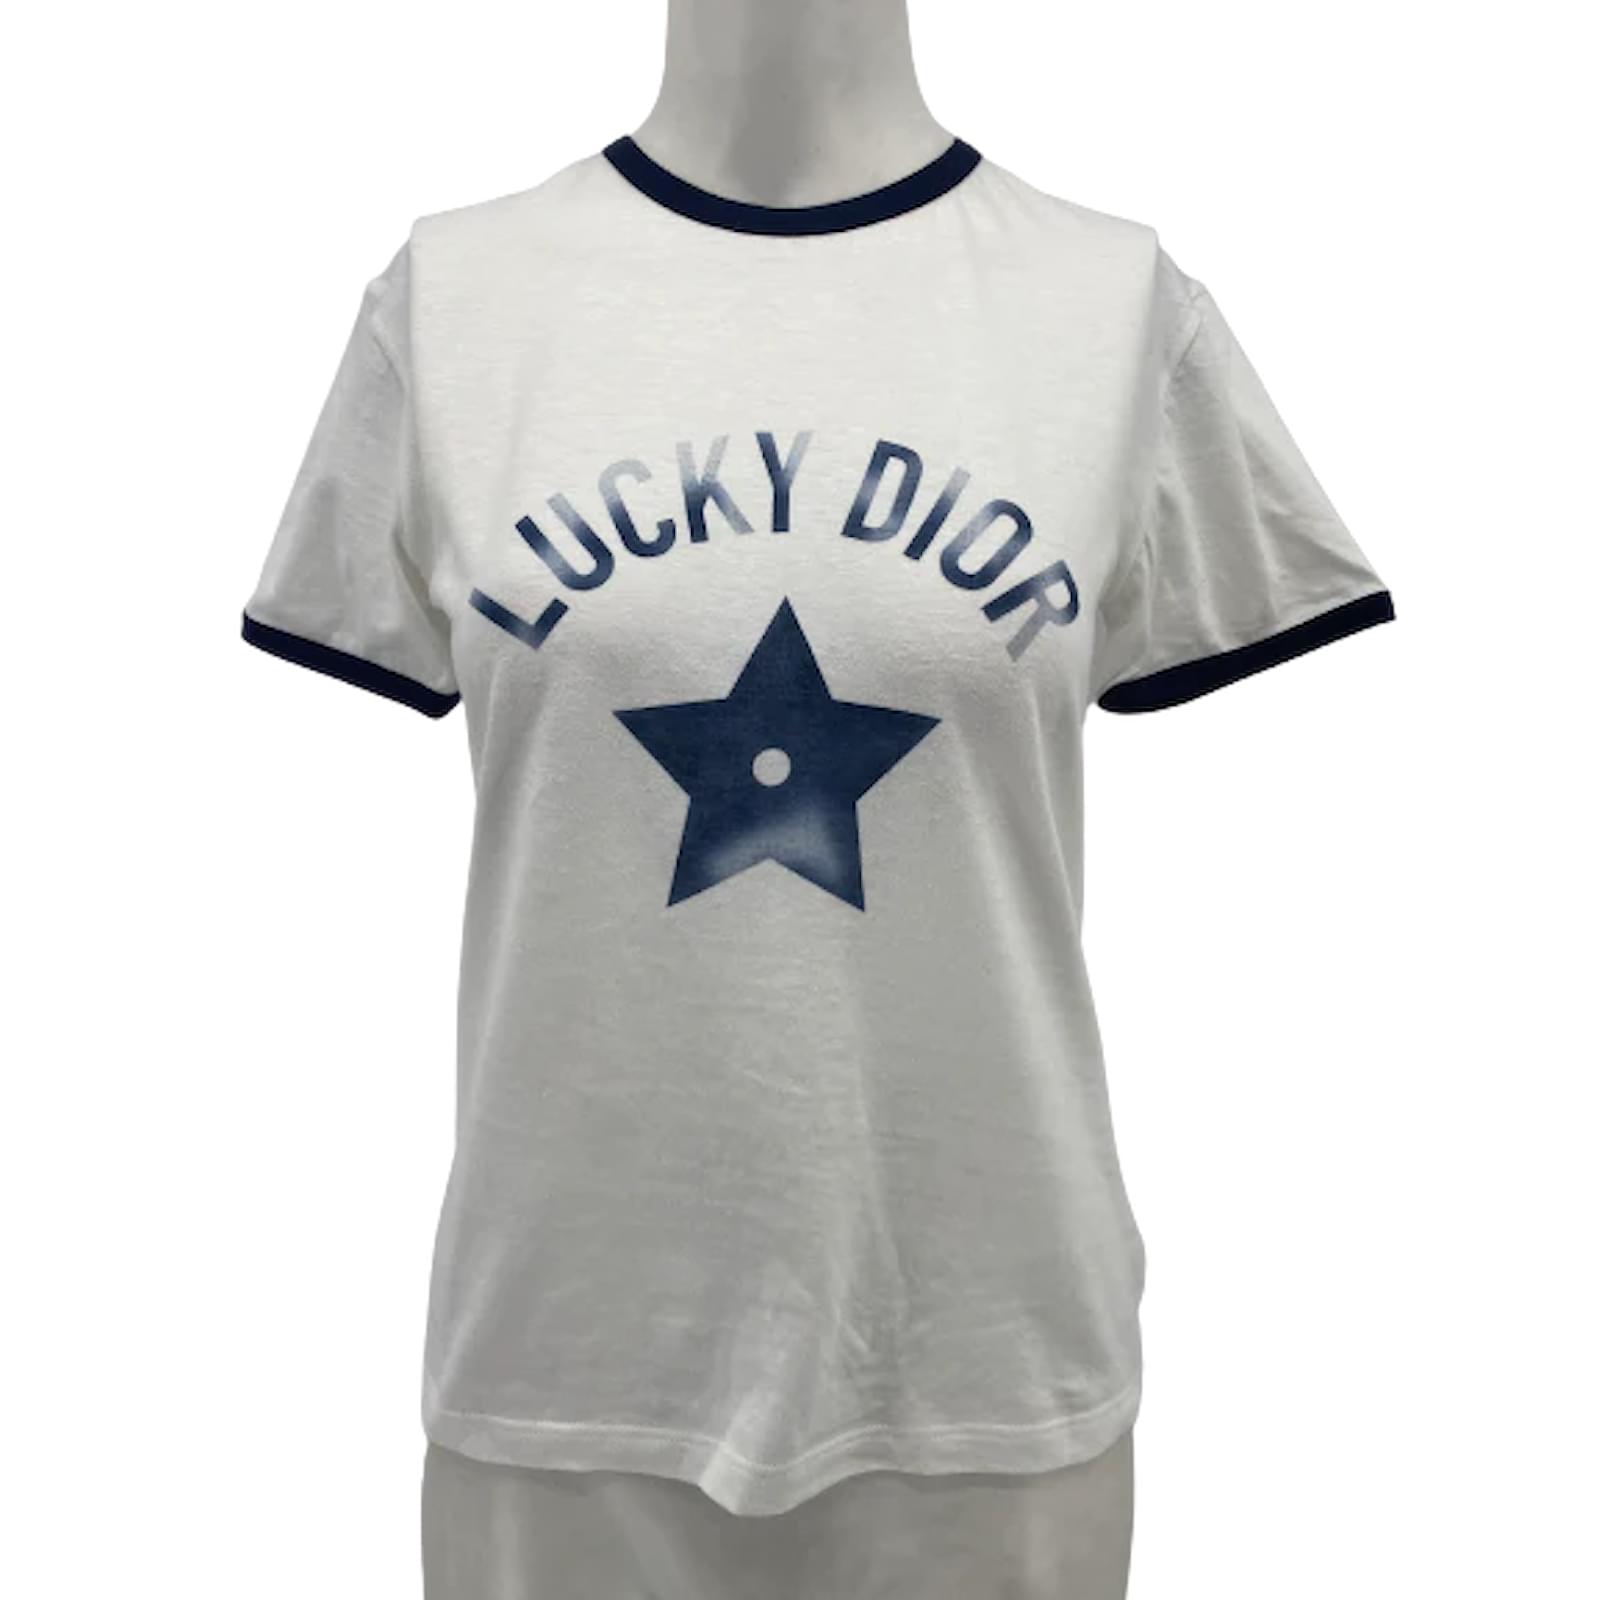 Christian Dior T-Shirt, White, S